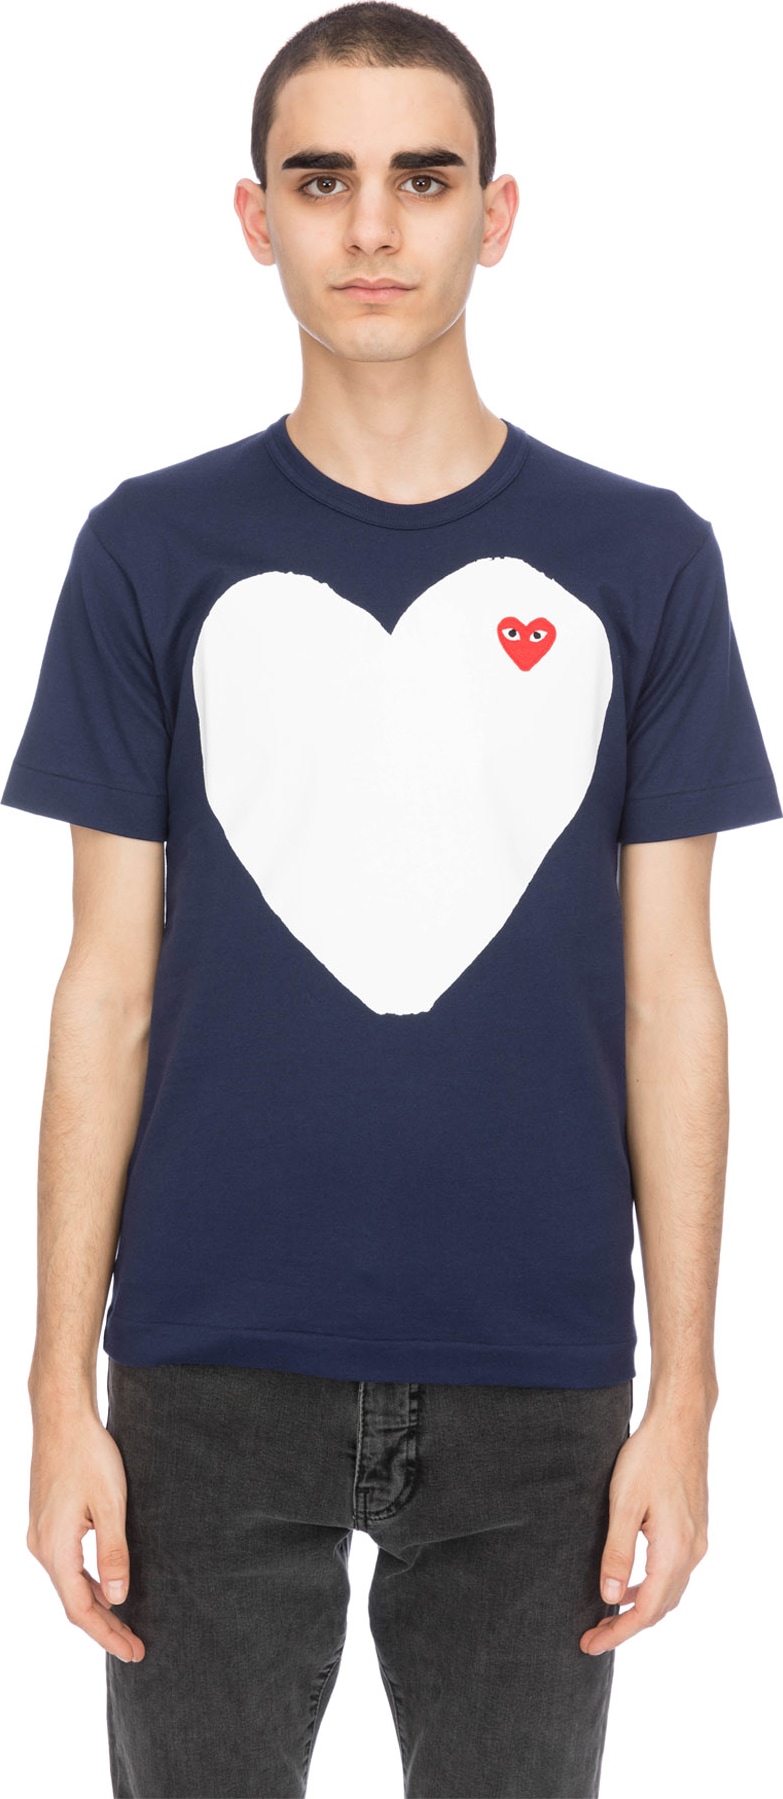 Comme des Garçons Play: Large White Heart Navy T-Shirt - Navy | influenceu